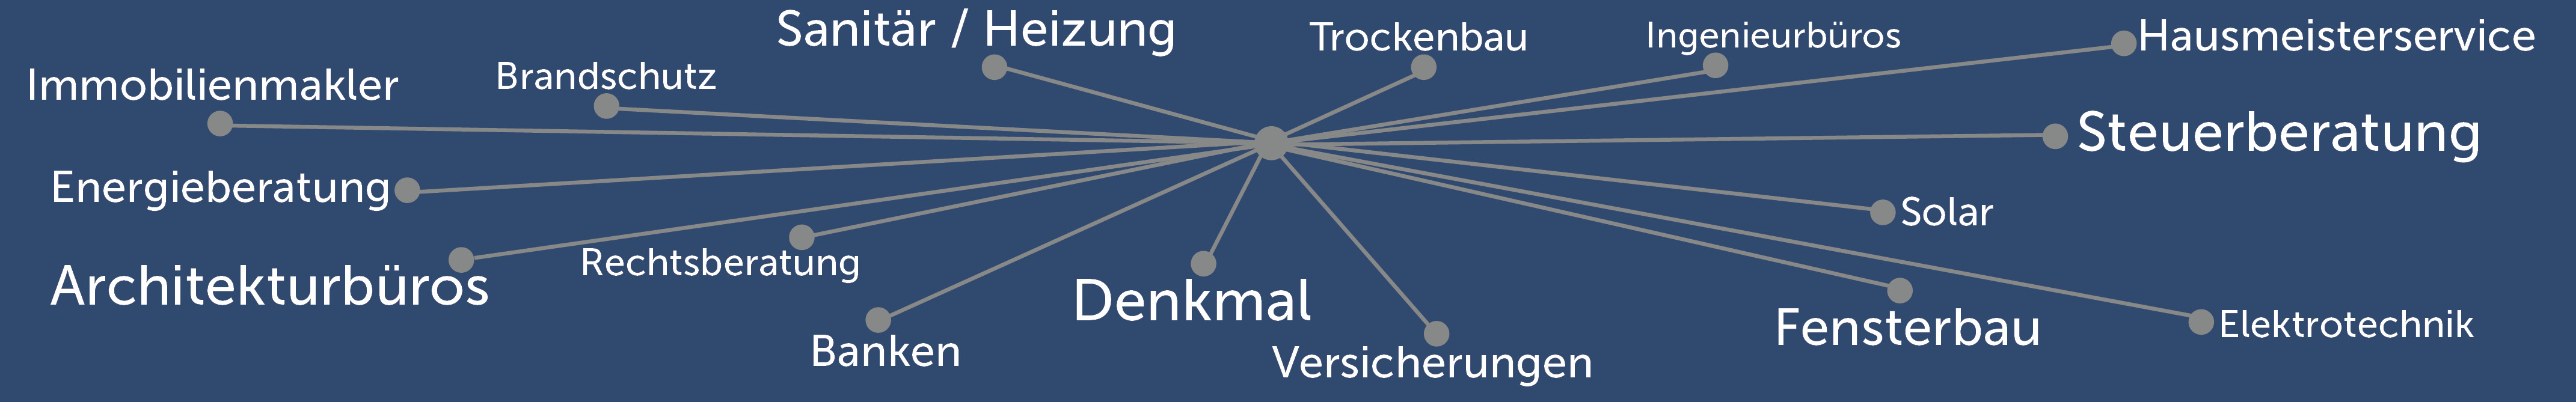 Illustration eines Netzwerkes mit Schlagworten aus der Immobilienverwaltung